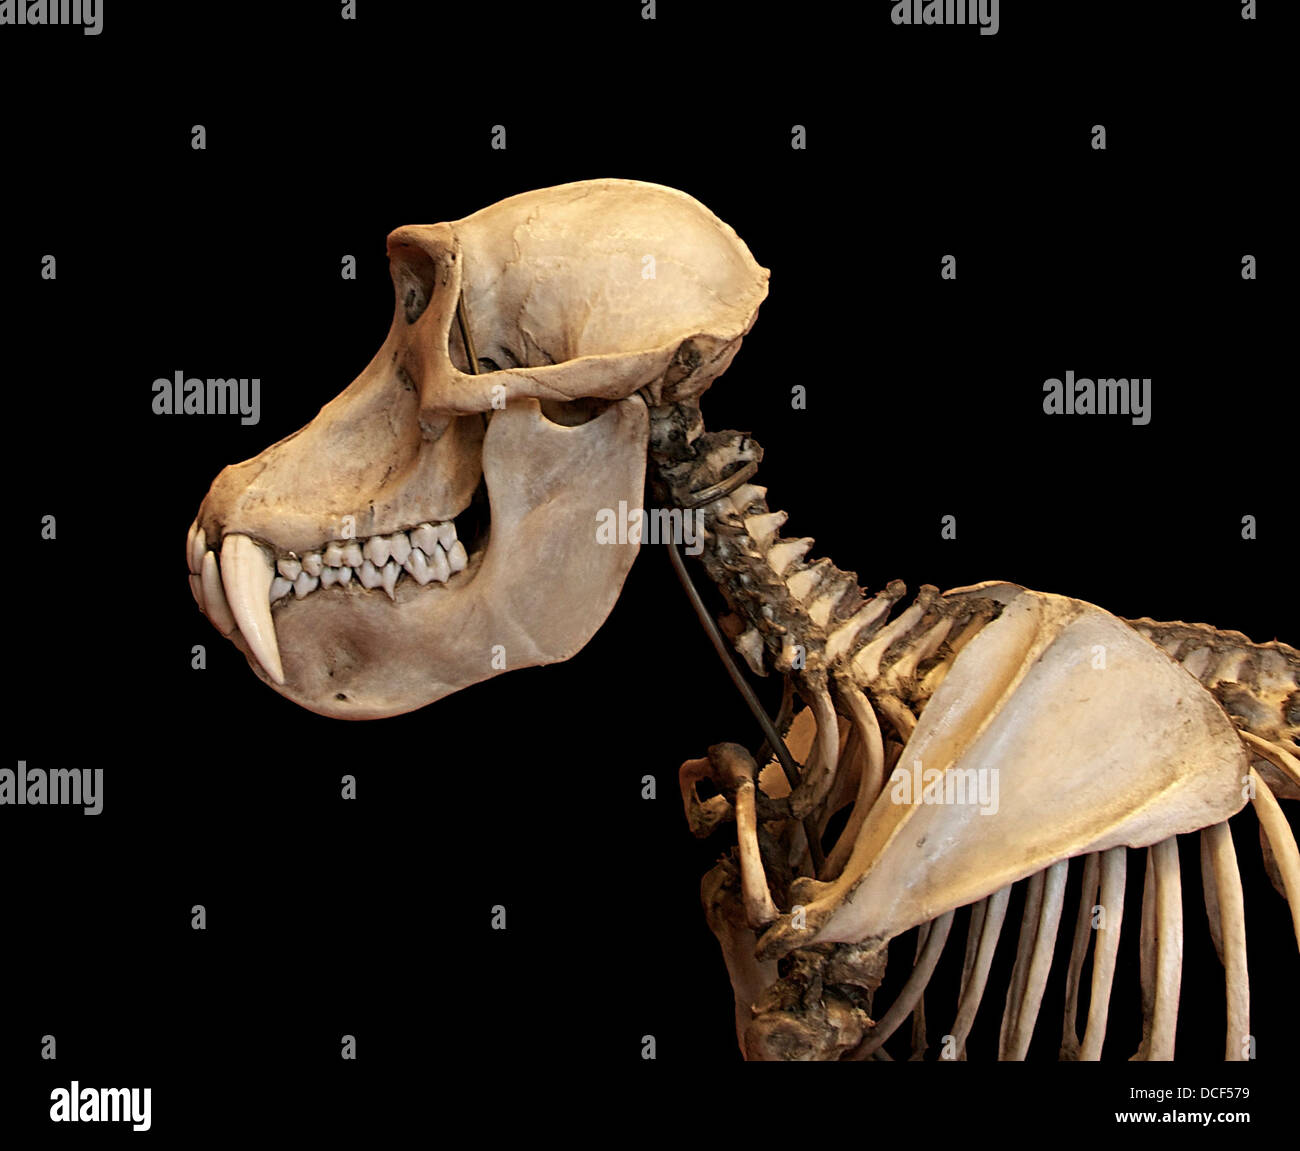 Mandrillus sphinx. Mandrill. Skeletton dal cranio della scapola. Galeries di paleontologia e anatomia comparata, Nazionale Mus Foto Stock